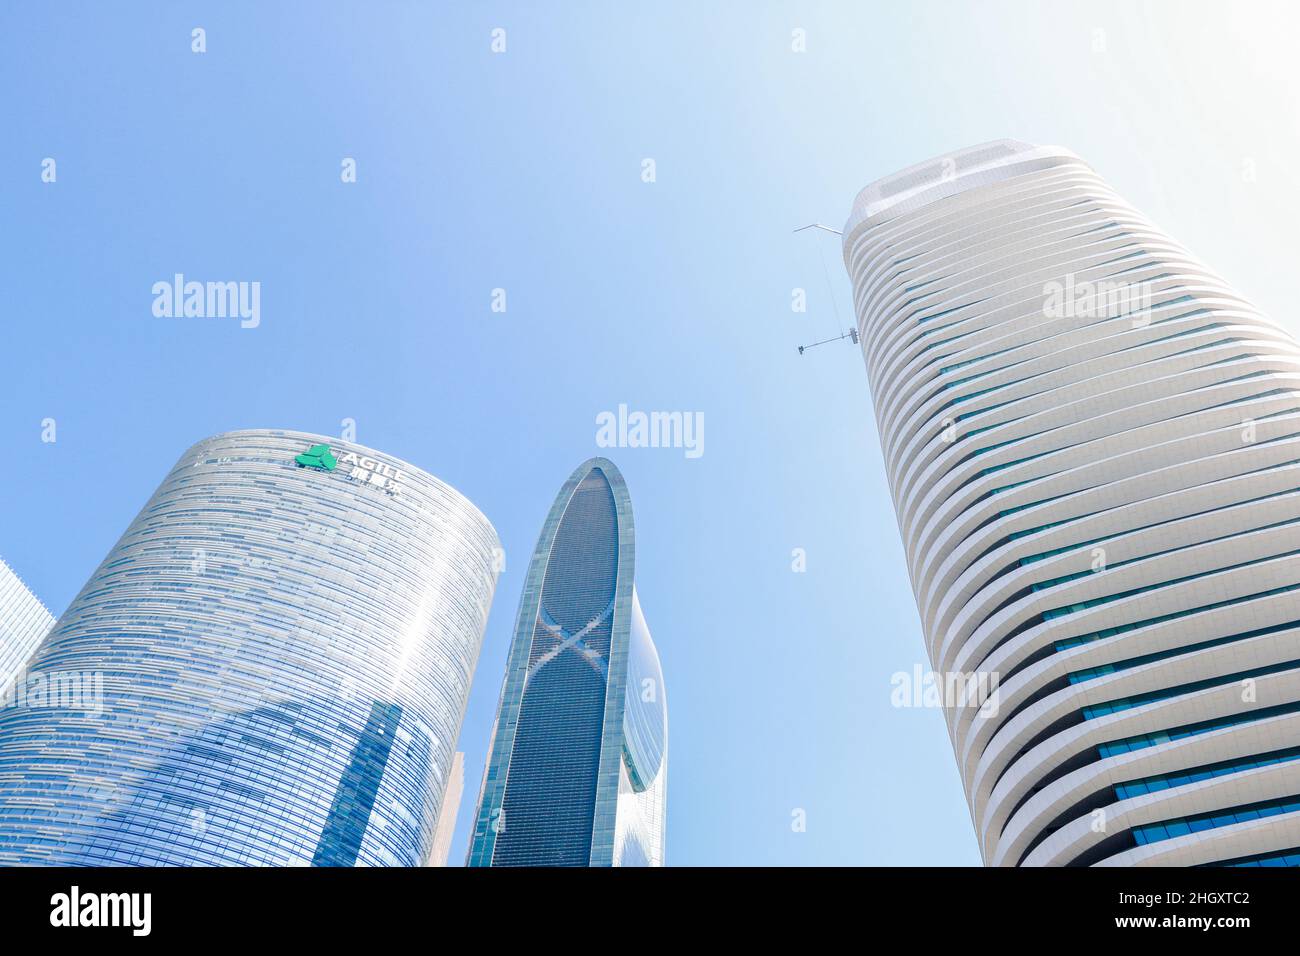 Guangzhou, Guangdong, Cina - 30 novembre 2019: Agile Group è un conglomerato integrato specializzato nello sviluppo immobiliare con una vasta presenza Foto Stock